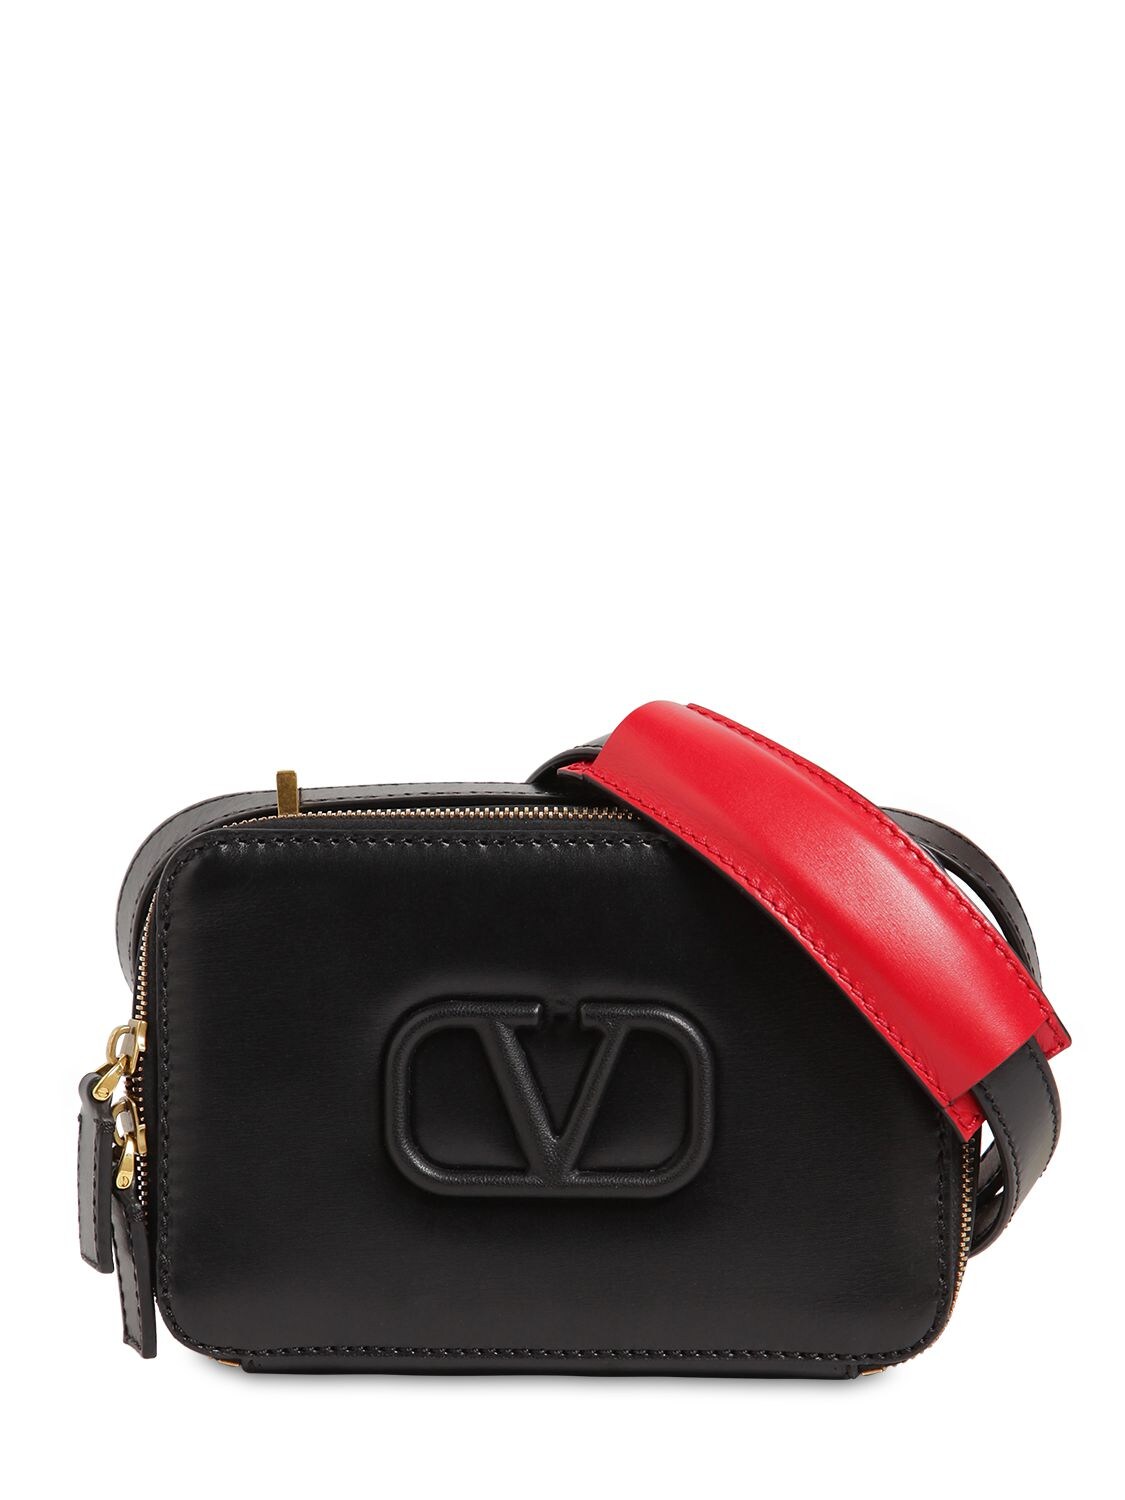 Valentino Garavani Vsling Small Leather Camera Bag In Black